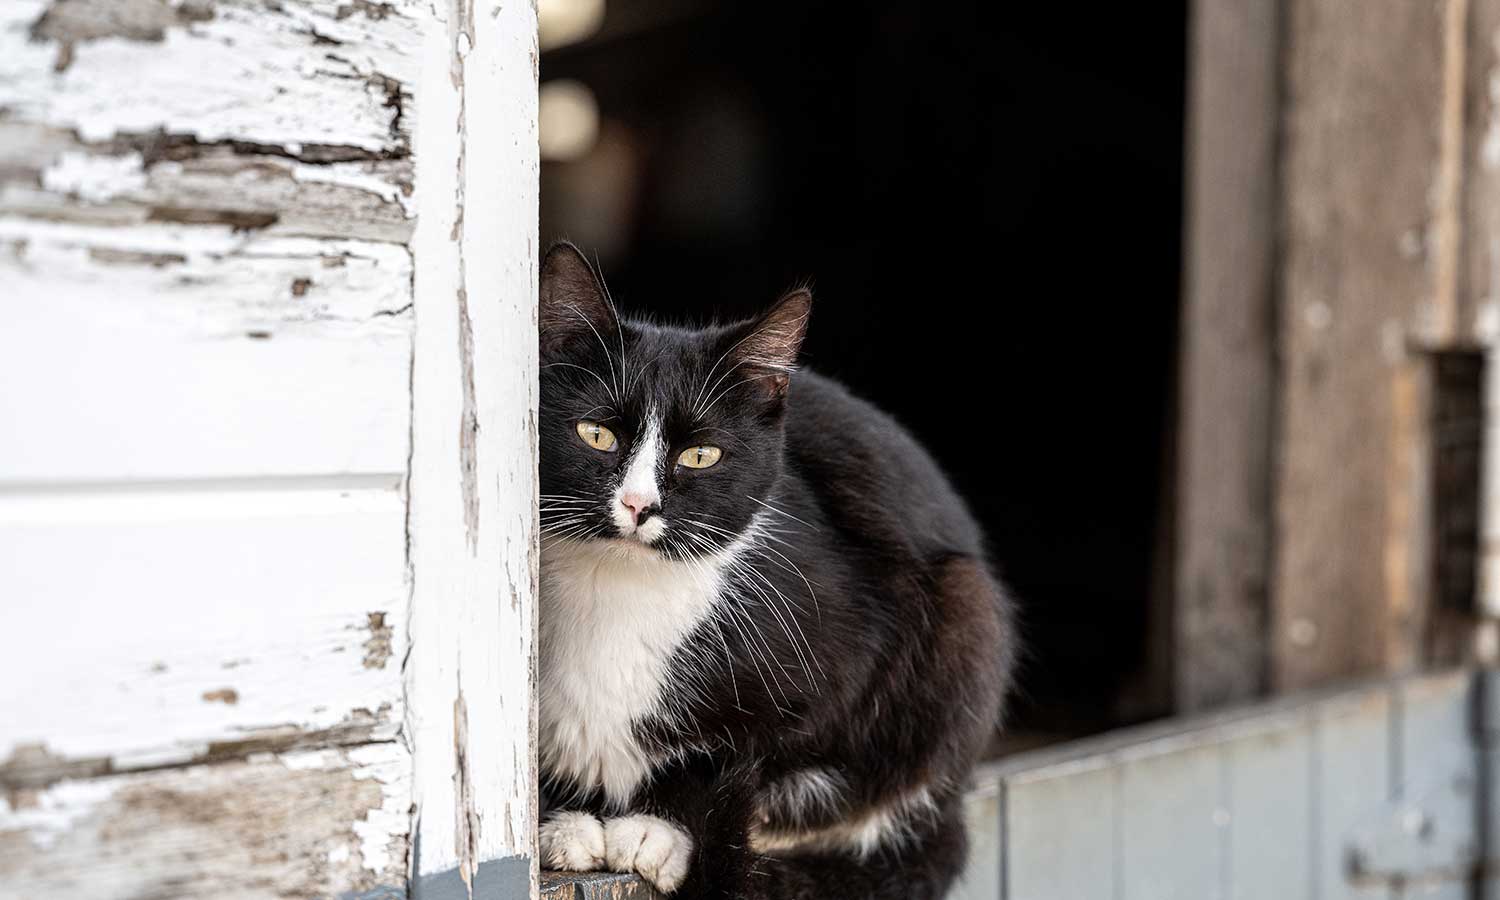 A cat in a barn window